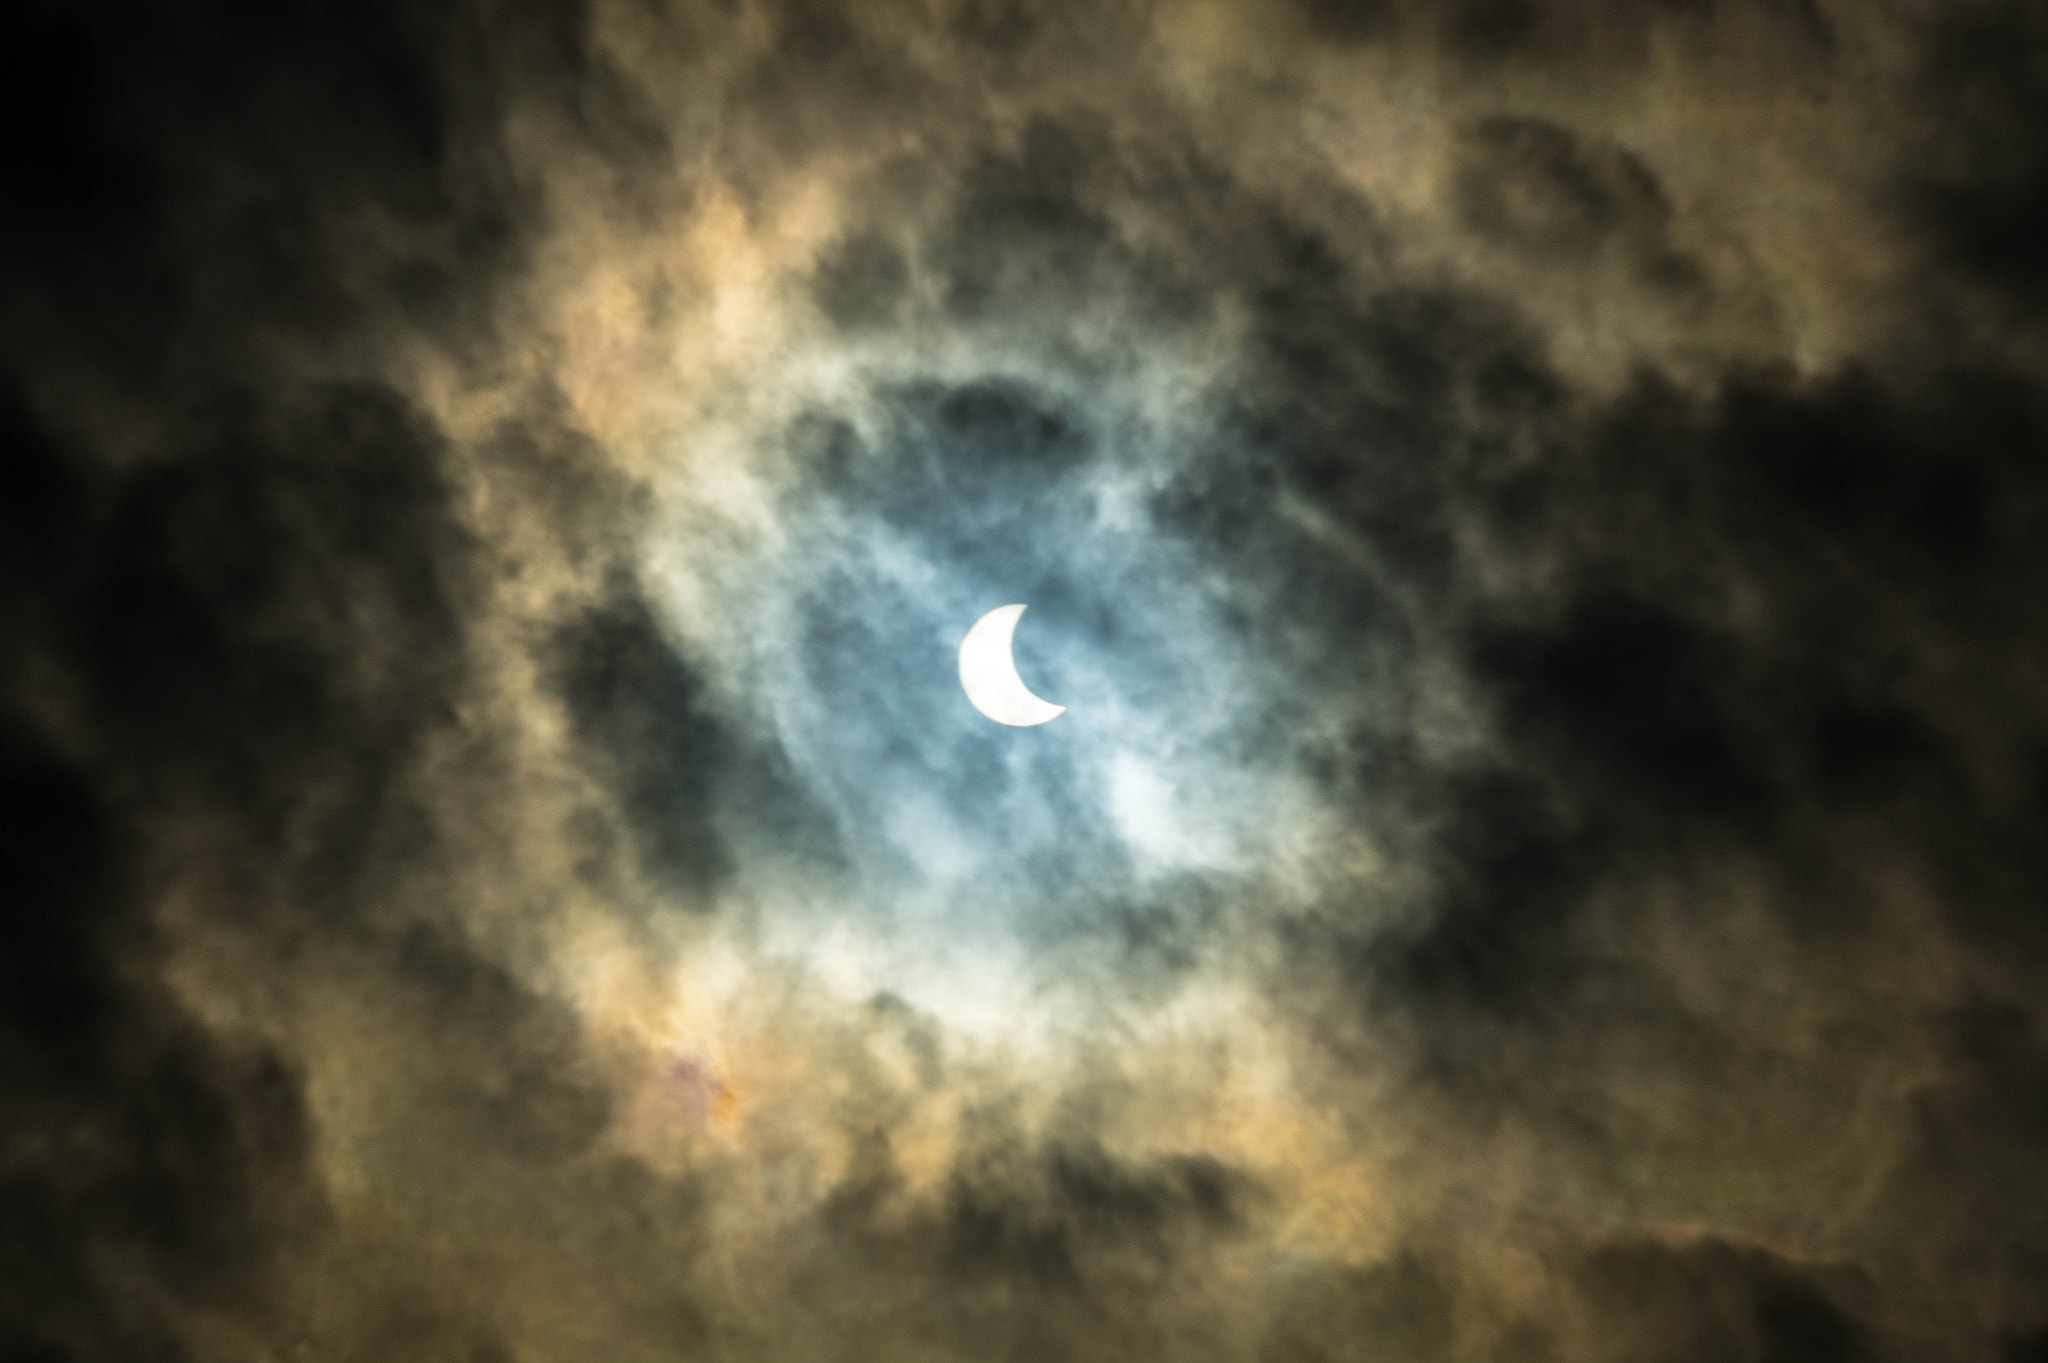 Sony SLT-A58 sample photo. Eclipse (god's eye nebula?) photography